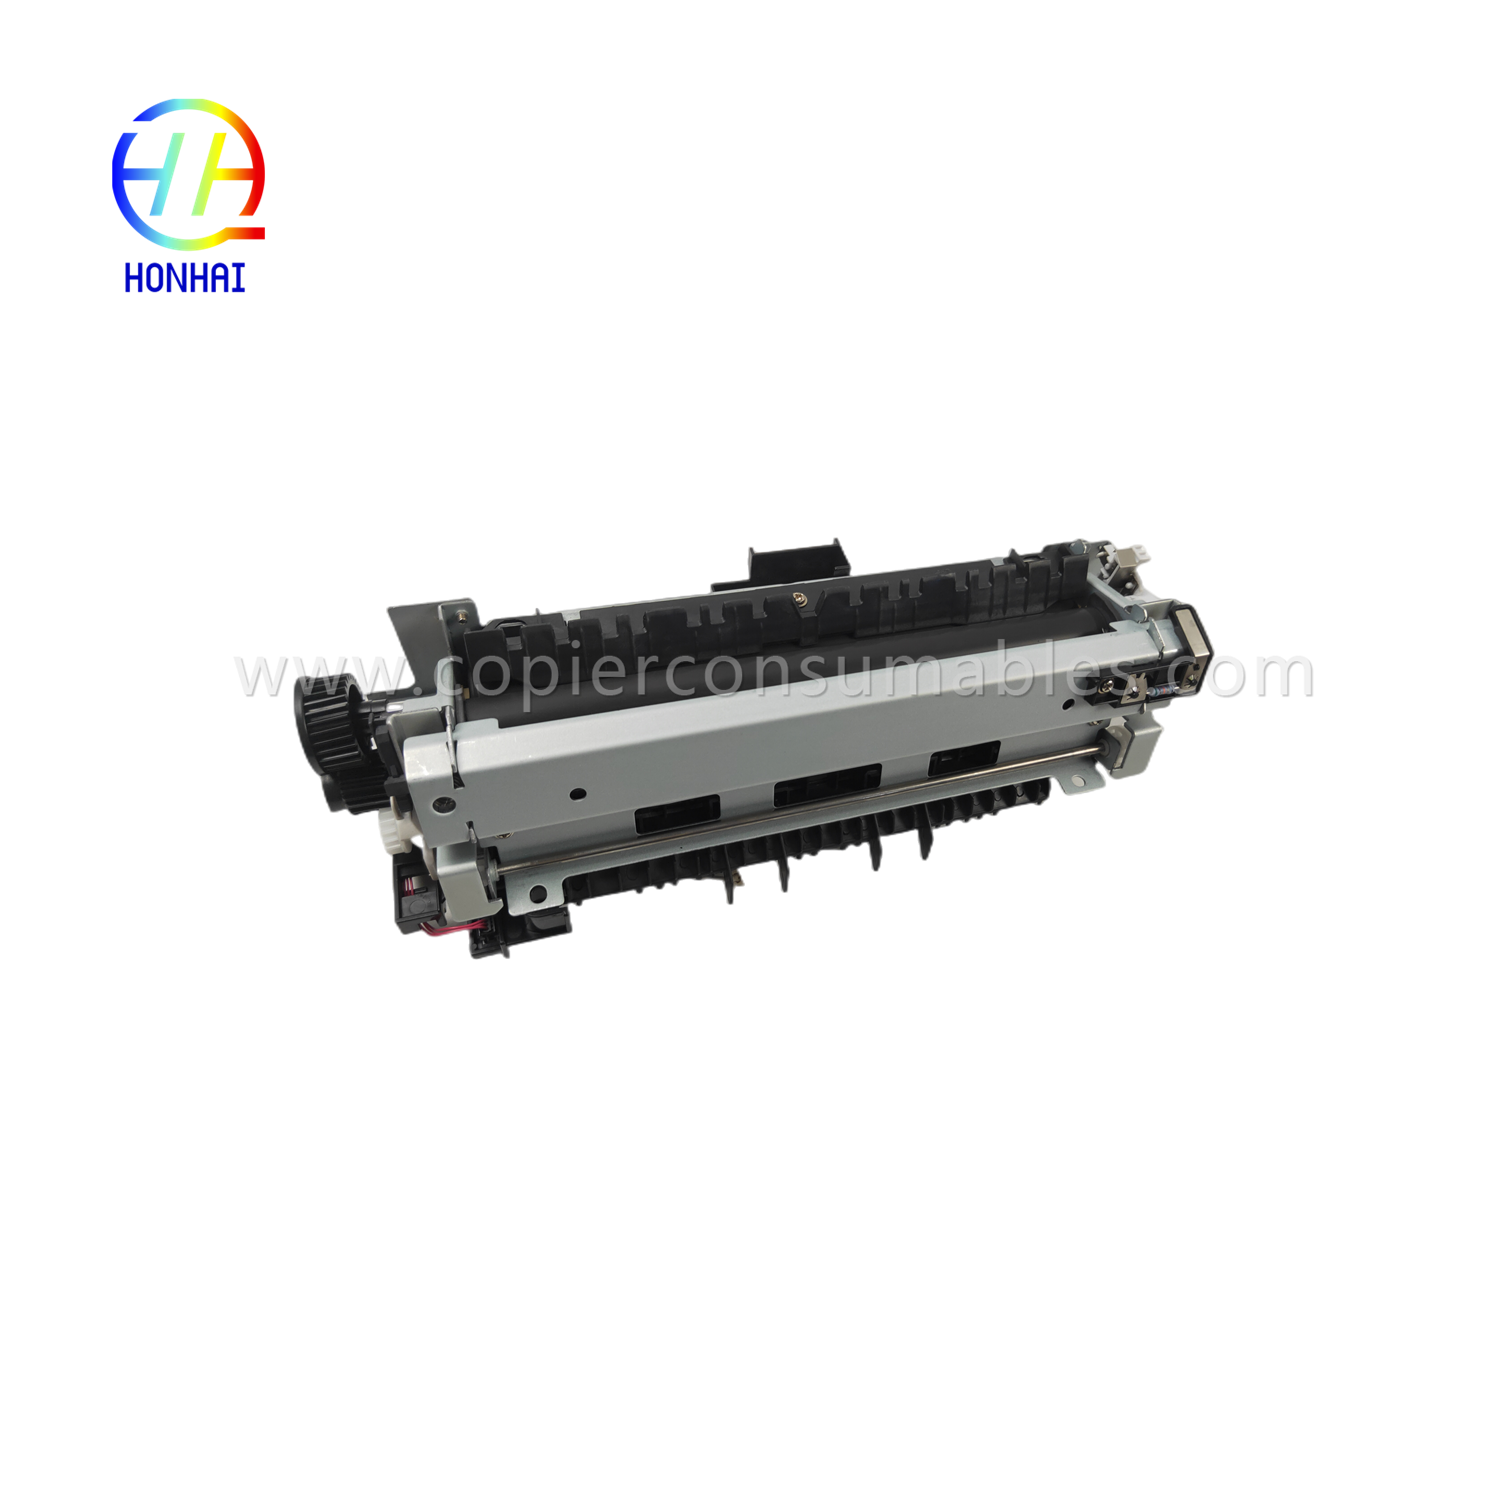 https://www.copierconsumables.com/fuser-assemble-220v-japan-for-hp-521-525-m521-m525-rm1-8508-rm1-8508-000-fuser-unit-product/